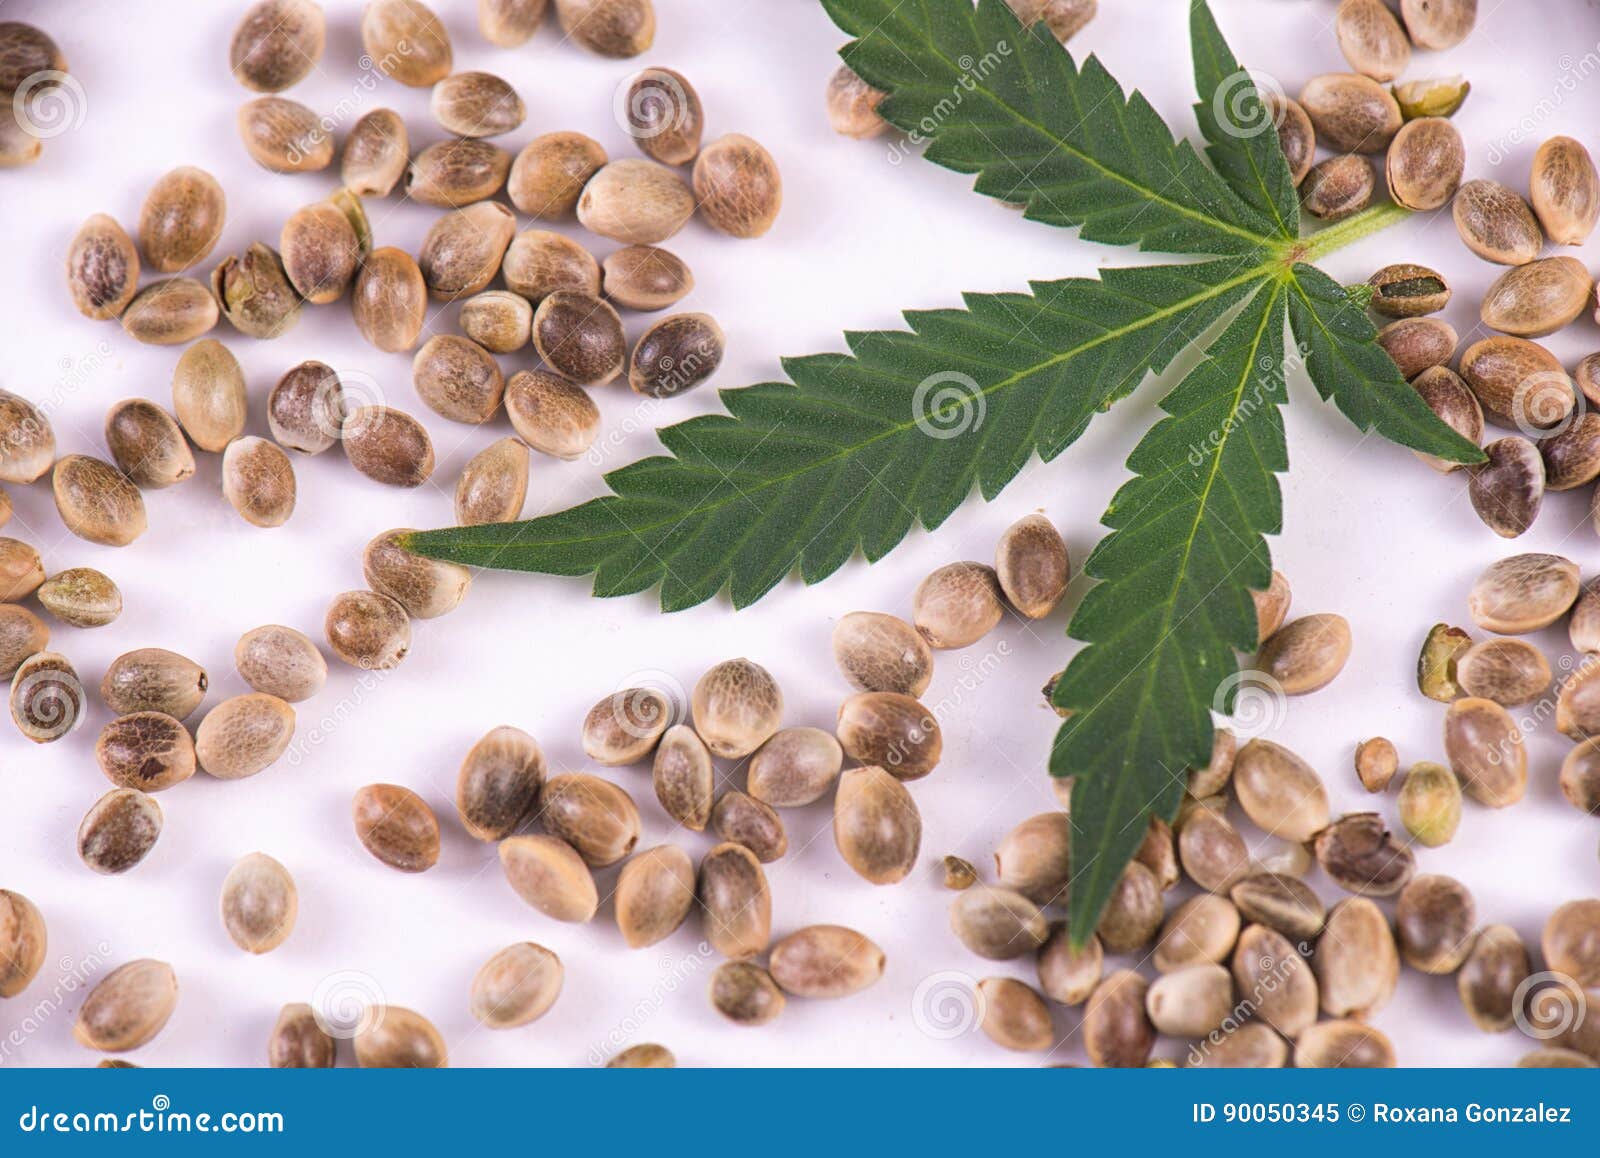 大麻种子和叶子在白色背景 大麻growin 库存图片 图片包括有